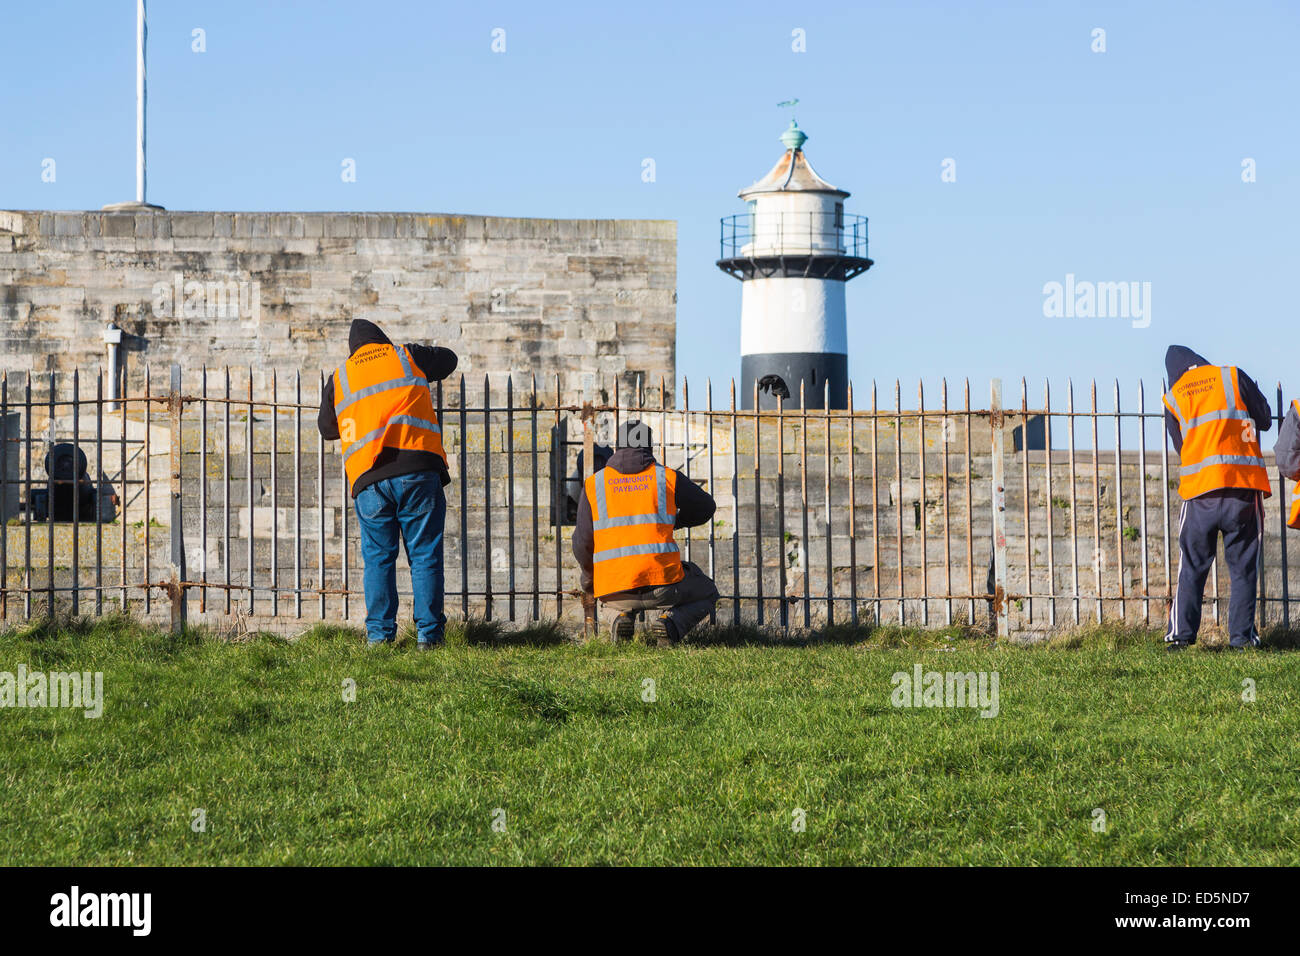 Délinquants travaillant au château de Southsea, Portsmouth, l'exécution de travaux communautaires ; vestes orange inscrit 'Communauté' de récupération Banque D'Images